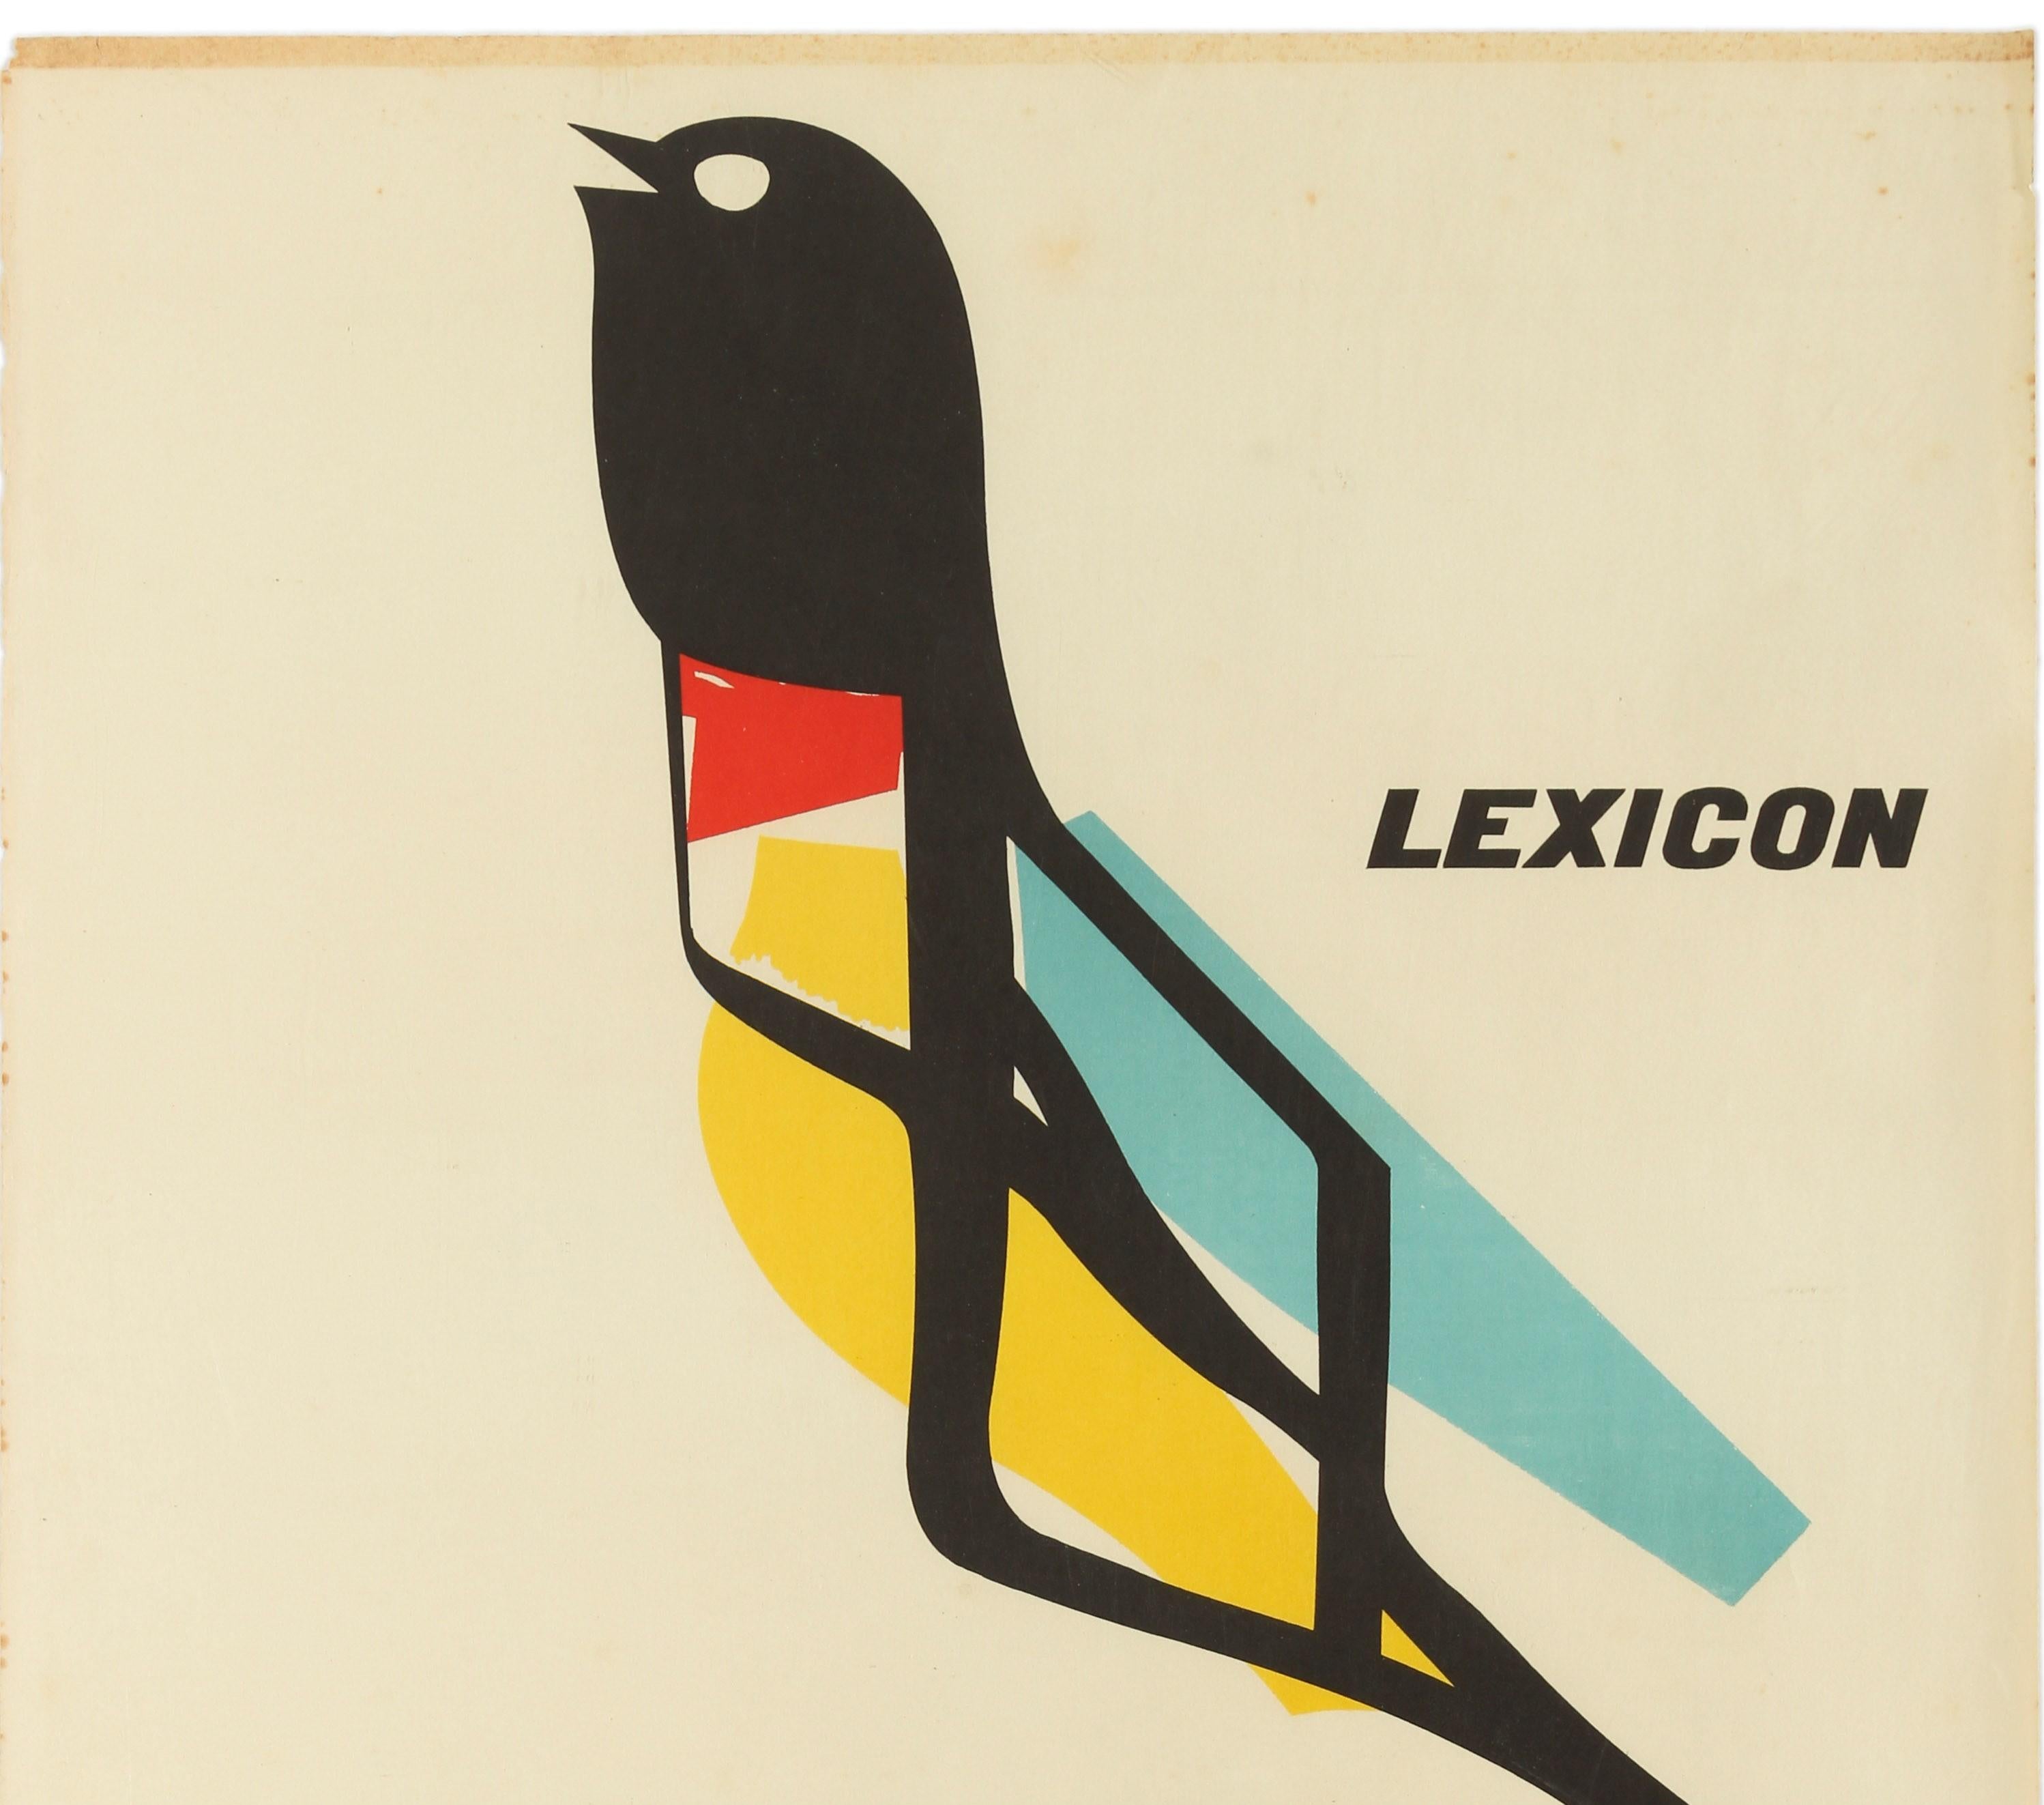 Original Vintage Poster Lexicon Hispano Olivetti Typewriter Graphic Design Bird - Print by Marcello Nizzoli